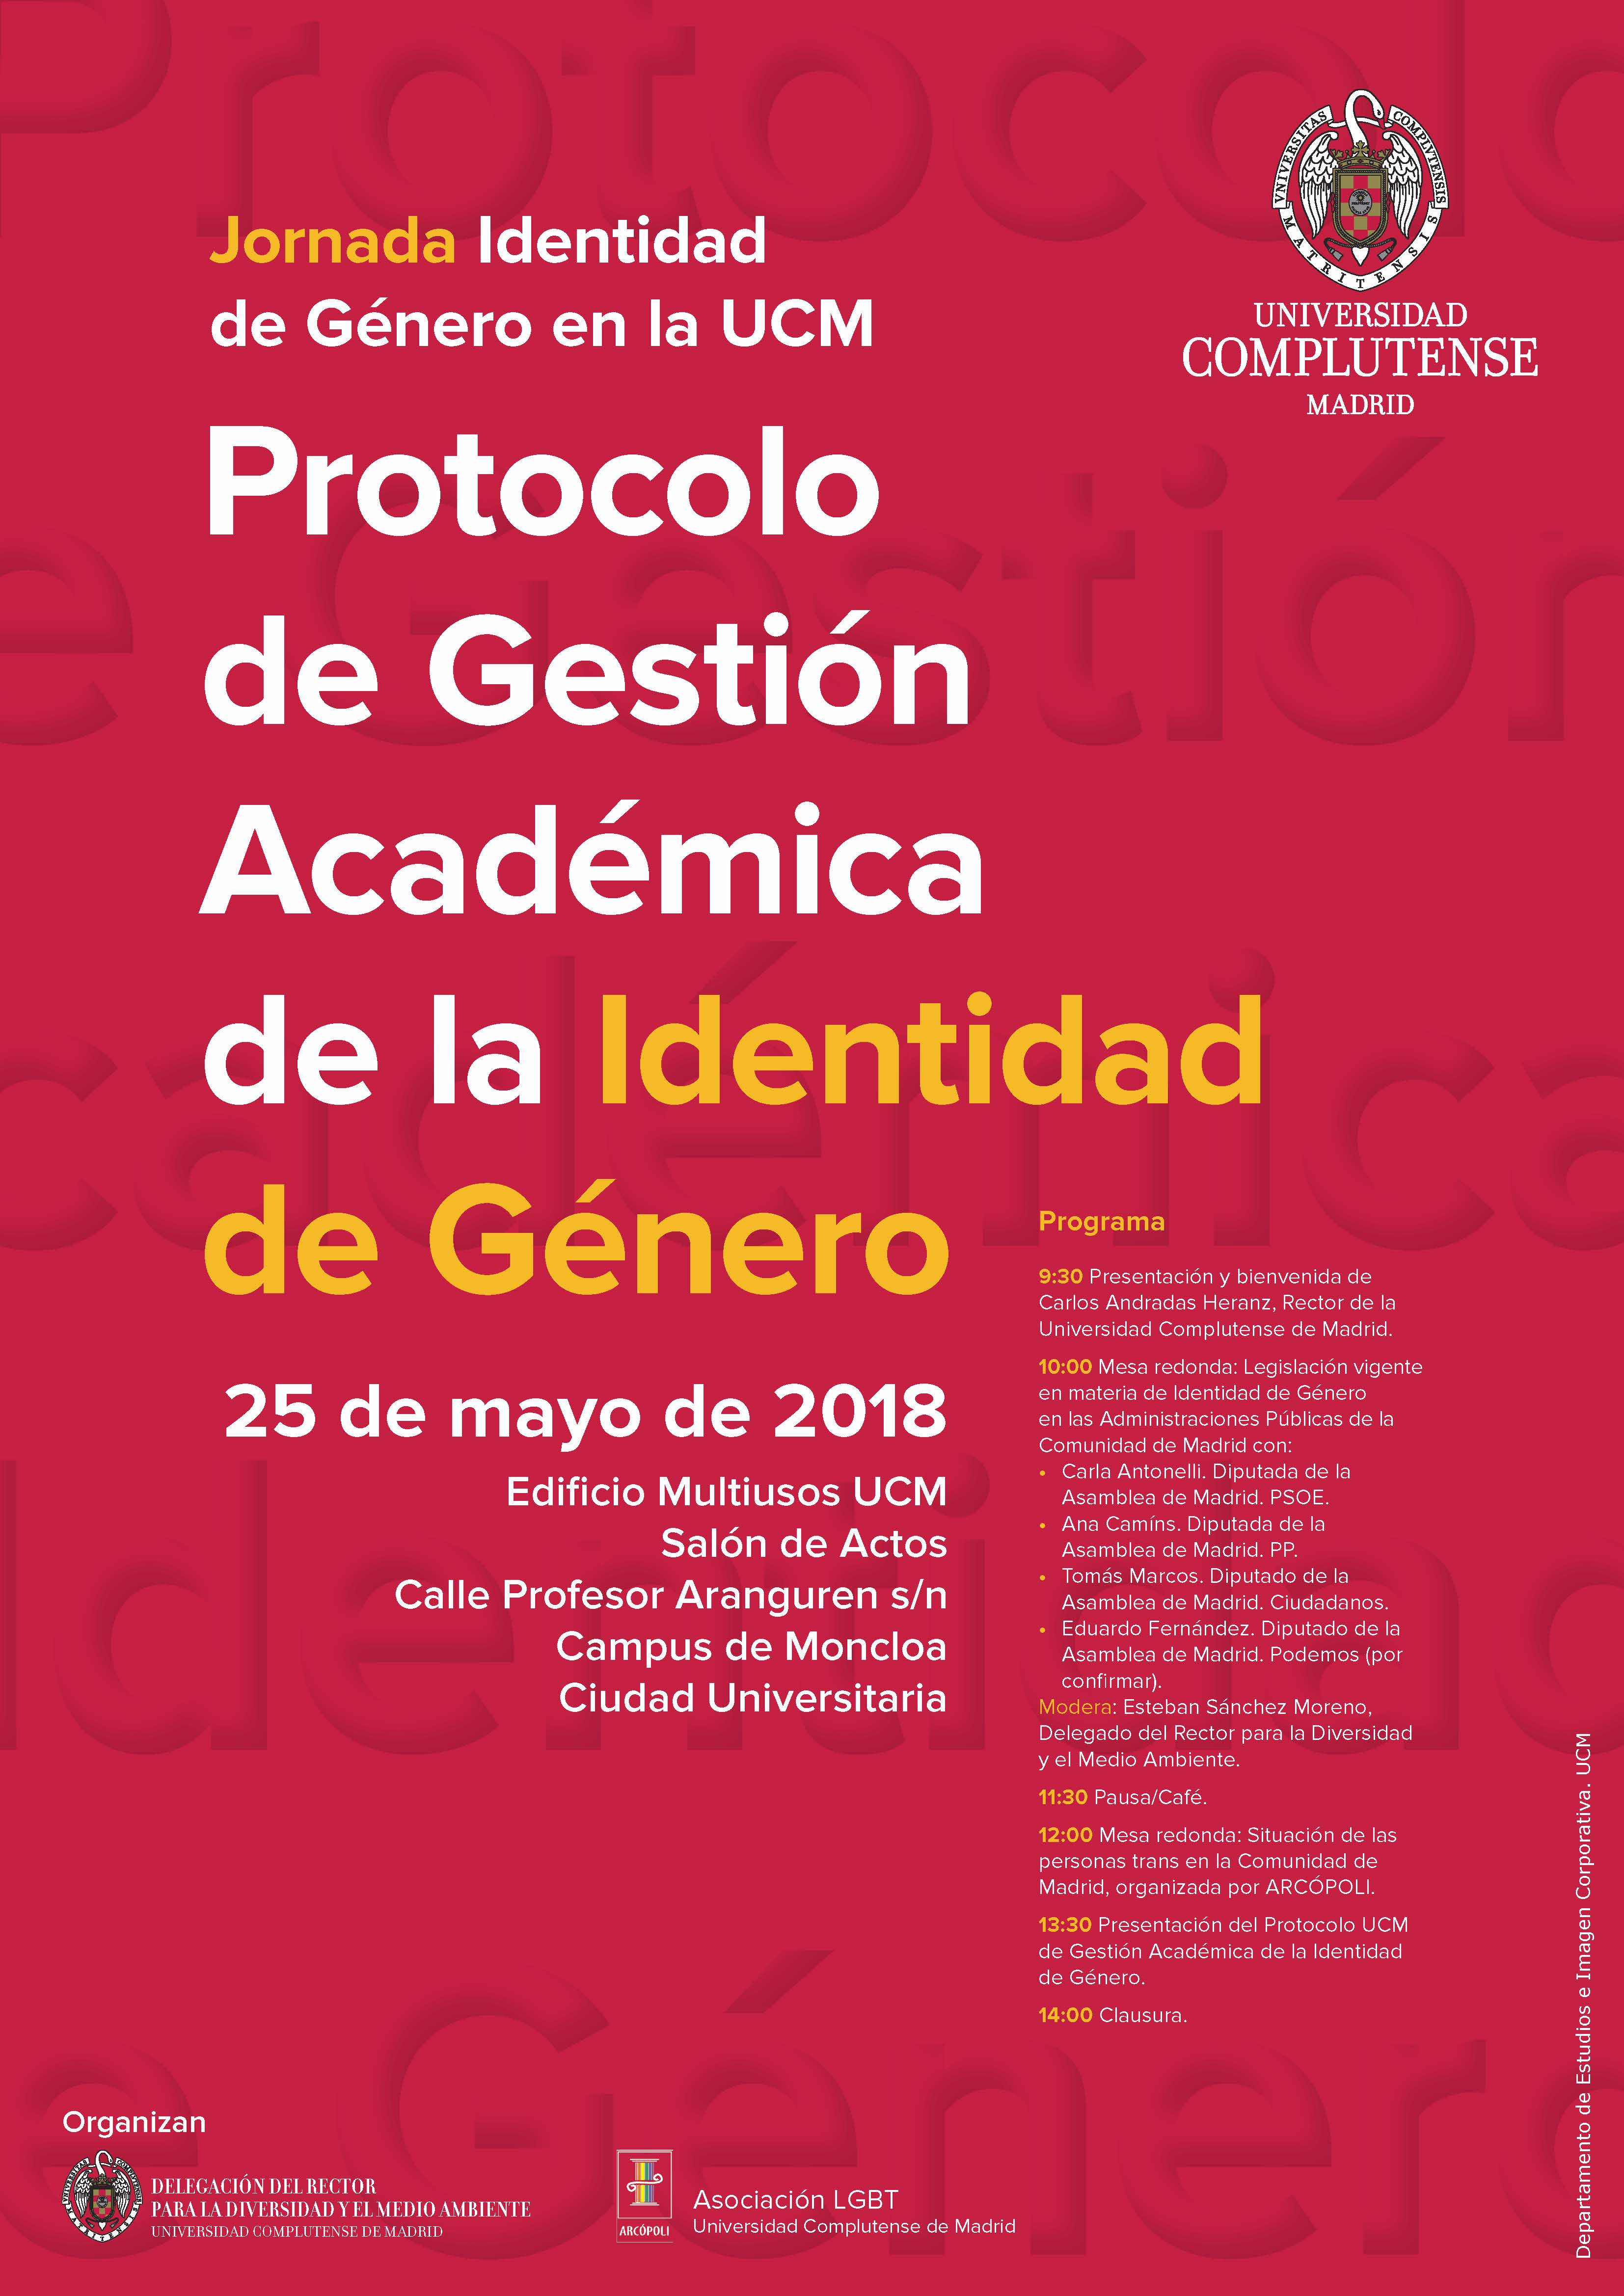 Jornada Identidad de Género en la Universidad Complutense de Madrid. Protocolo de Gestión Académica de la Identidad de Género - 2